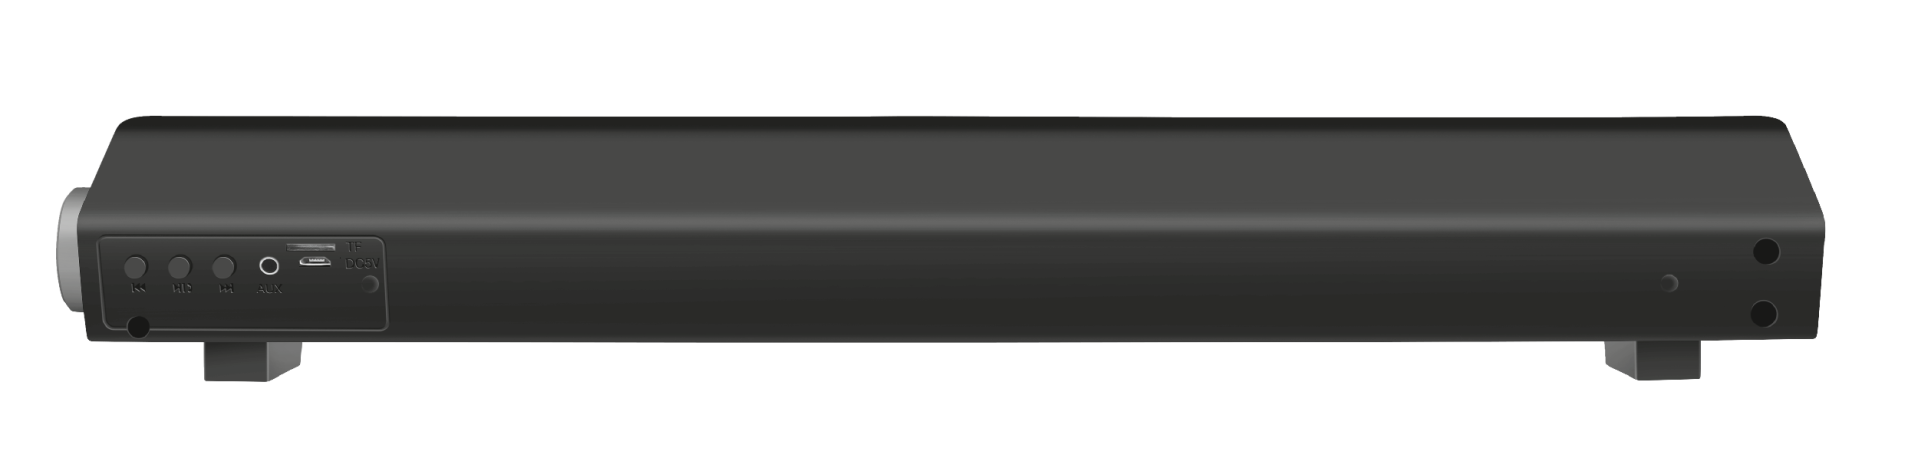 Trust Lino Wireless Soundbar with Bluetooth 20W / Black